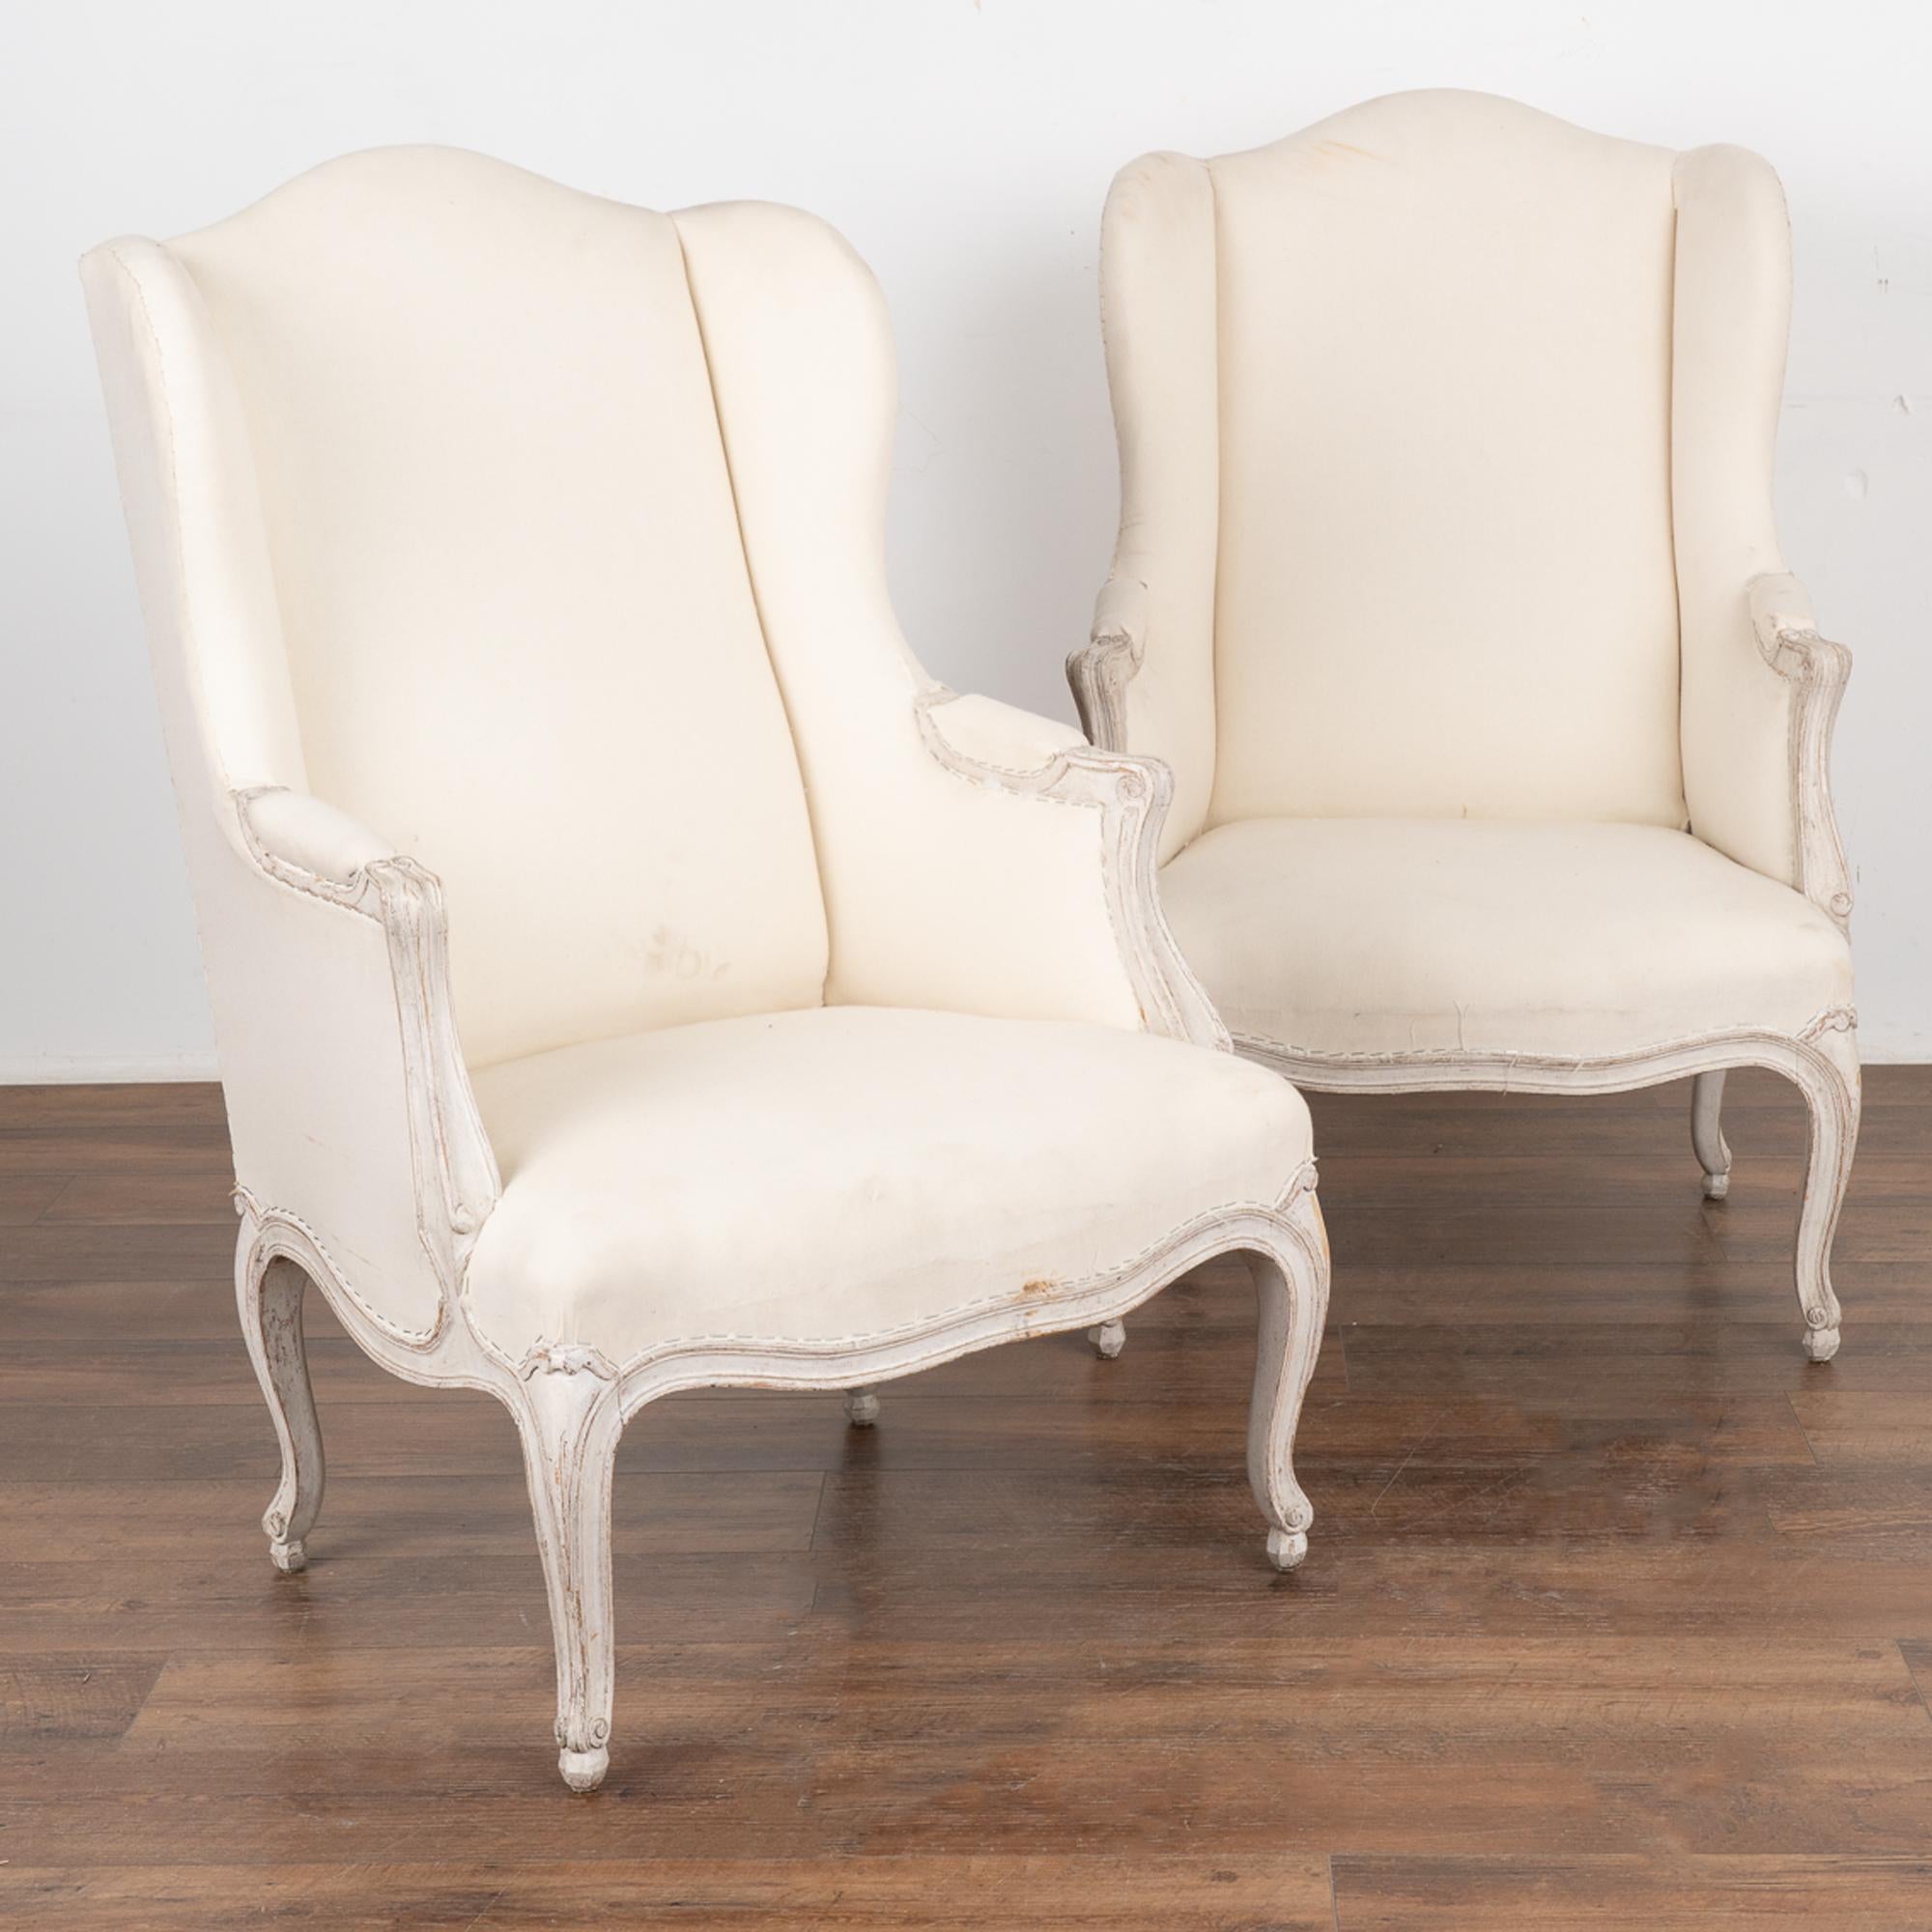 Gracieuse et romantique, cette paire de fauteuils à oreilles de style gustavien a conservé sa charmante peinture blanche d'origine, légèrement grattée, révélant une chaude patine de bois naturel en dessous. 
Le revêtement en lin simple du dossier,